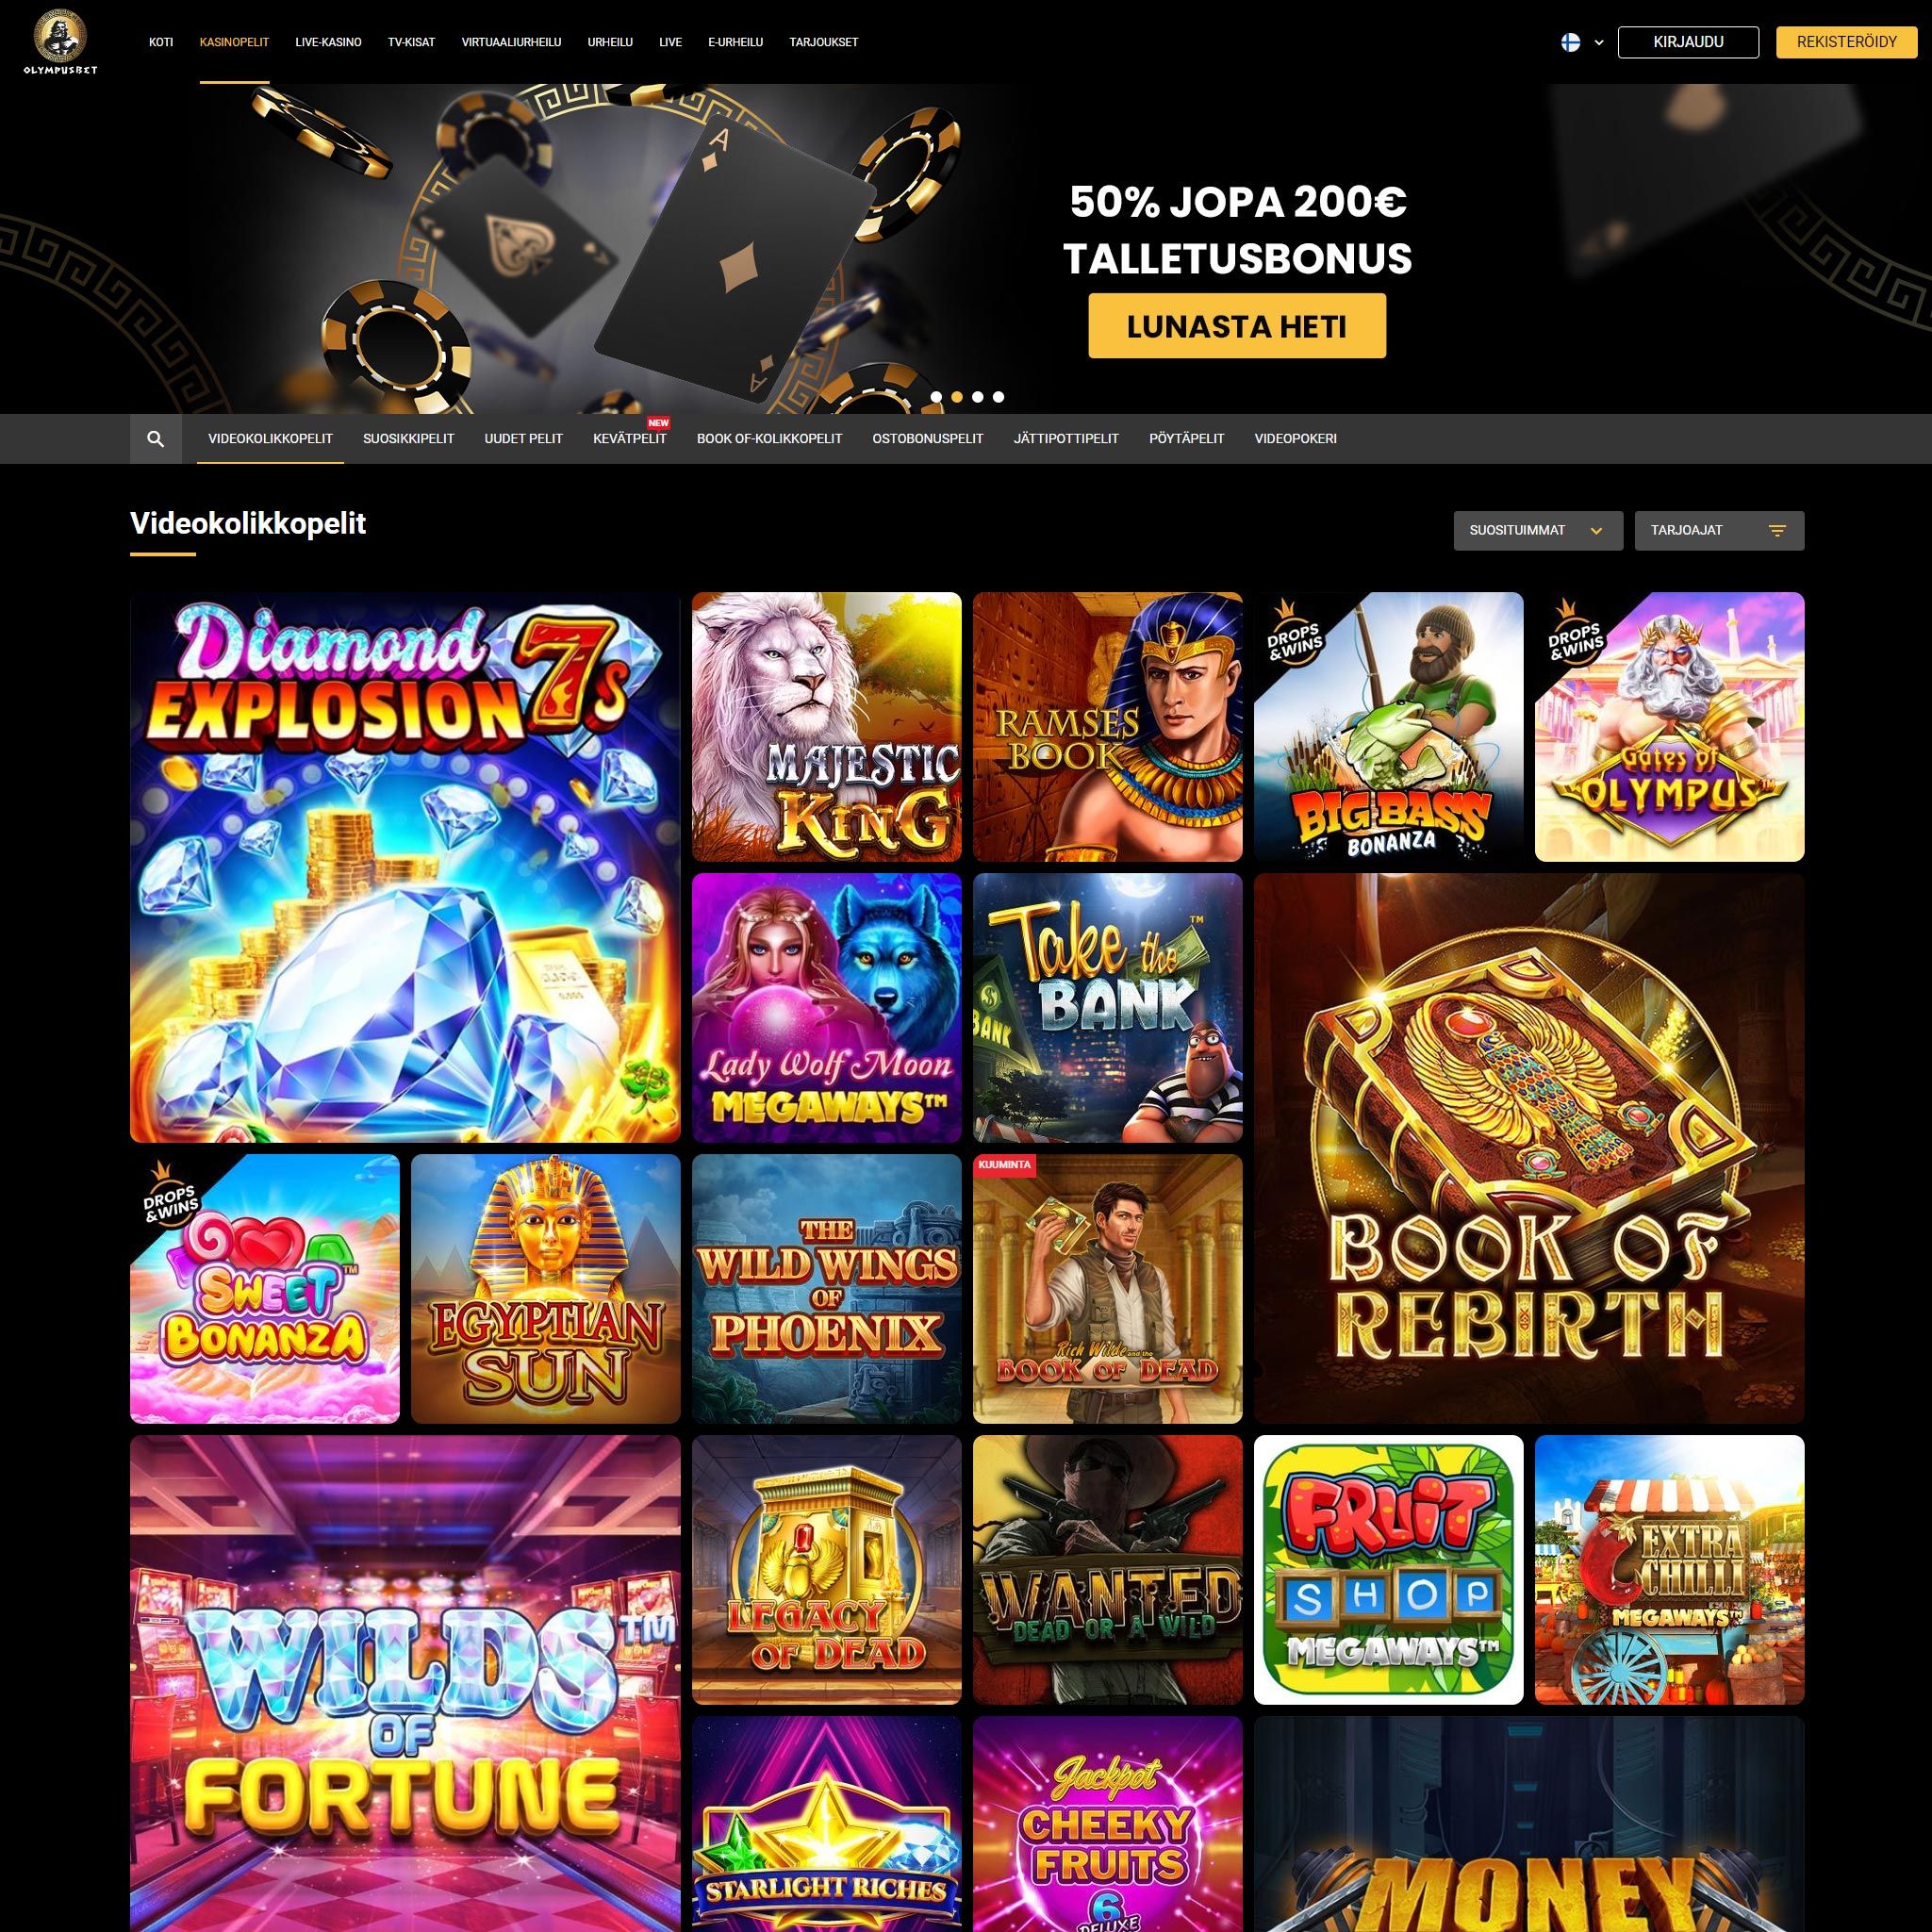 Pelaa netticasino Olympusbet Casino voittaaksesi oikeaa rahaa – oikean rahan online casino! Vertaa kaikki nettikasinot ja löydä parhaat casinot Suomessa.